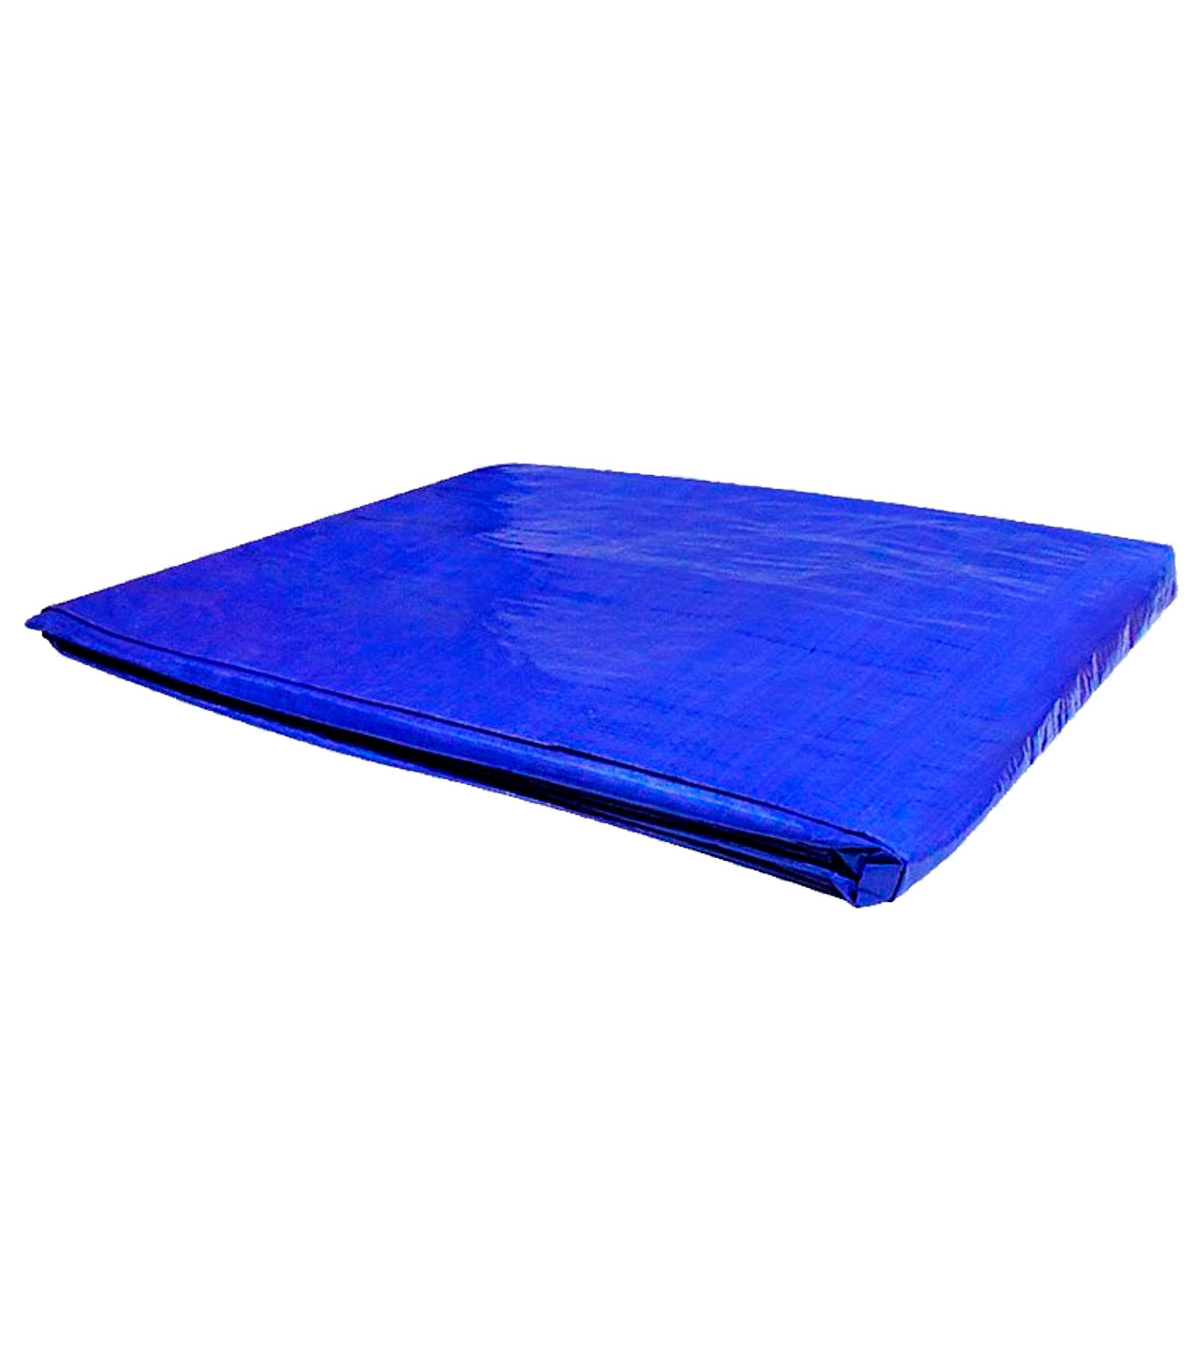 Tradineur - Toldo de polietileno impermeable, lona de protección con ojales  de aluminio, exterior, resistente al desgaste (Azul